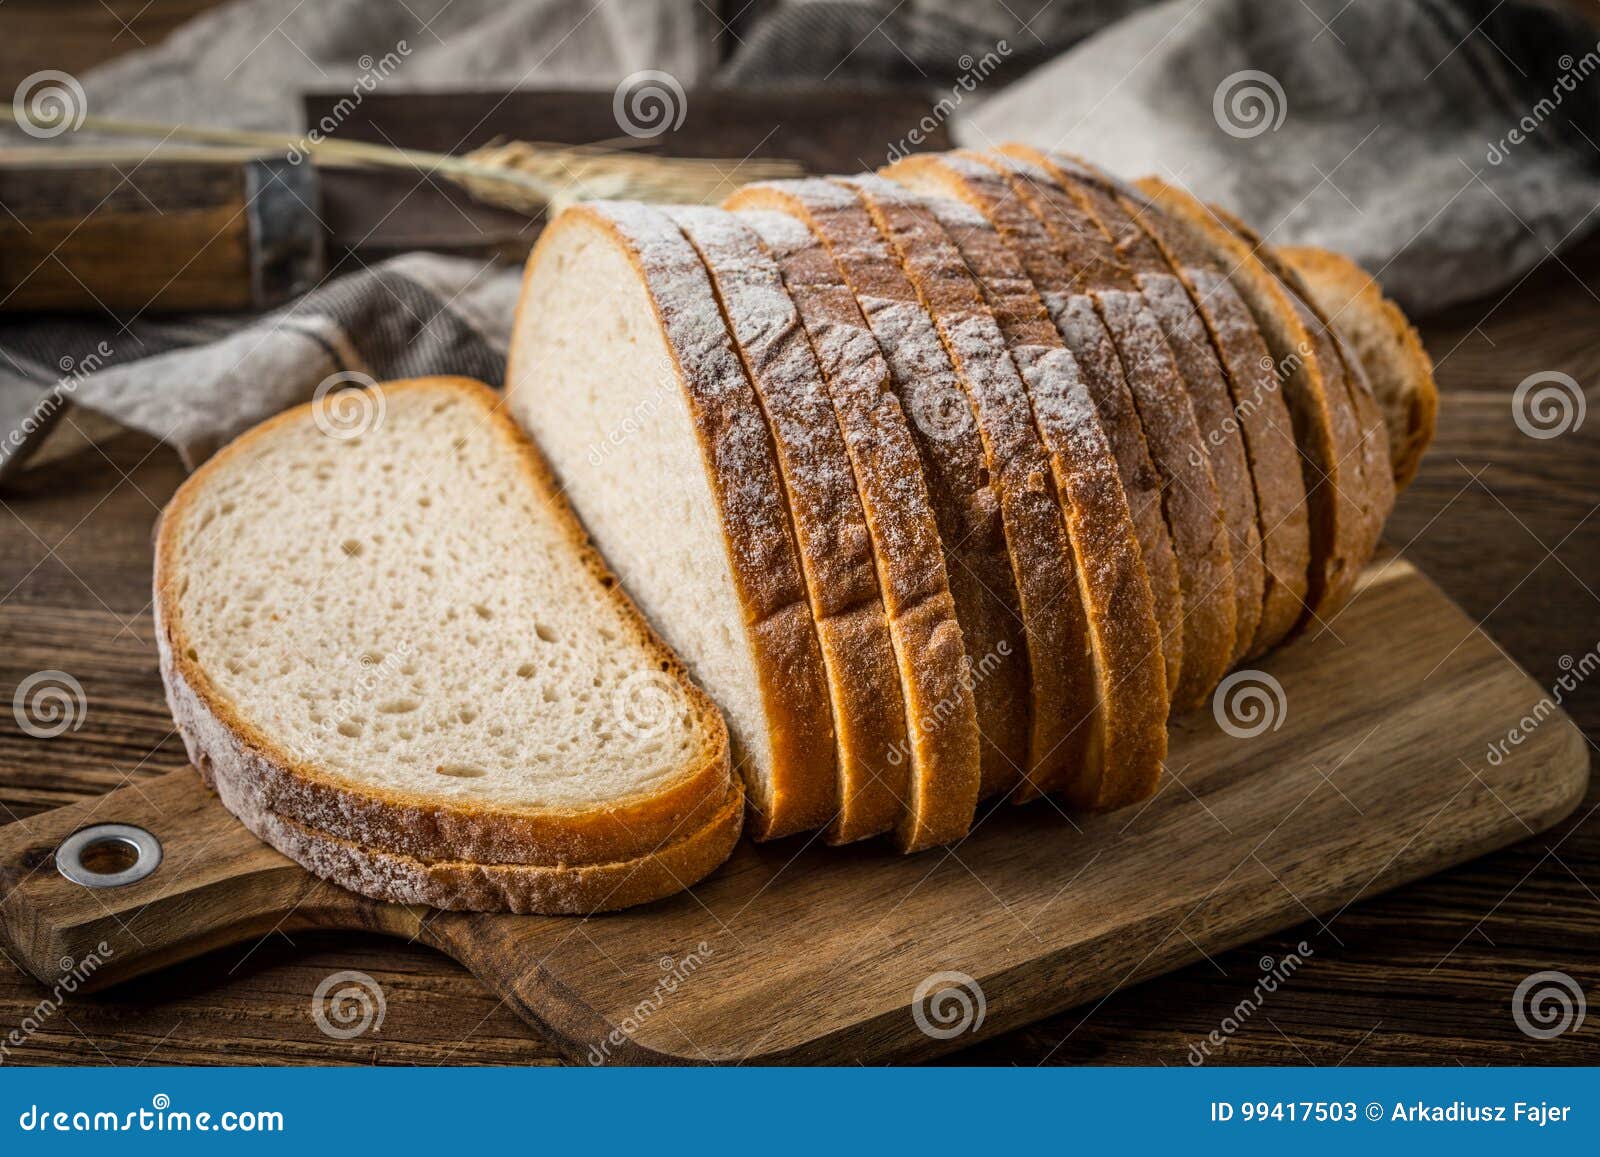 Хлеб и т д. Нарезанный хлеб. Красивые ломтики хлеба. Разрезанный хлеб. Красиво нарезать хлеб.